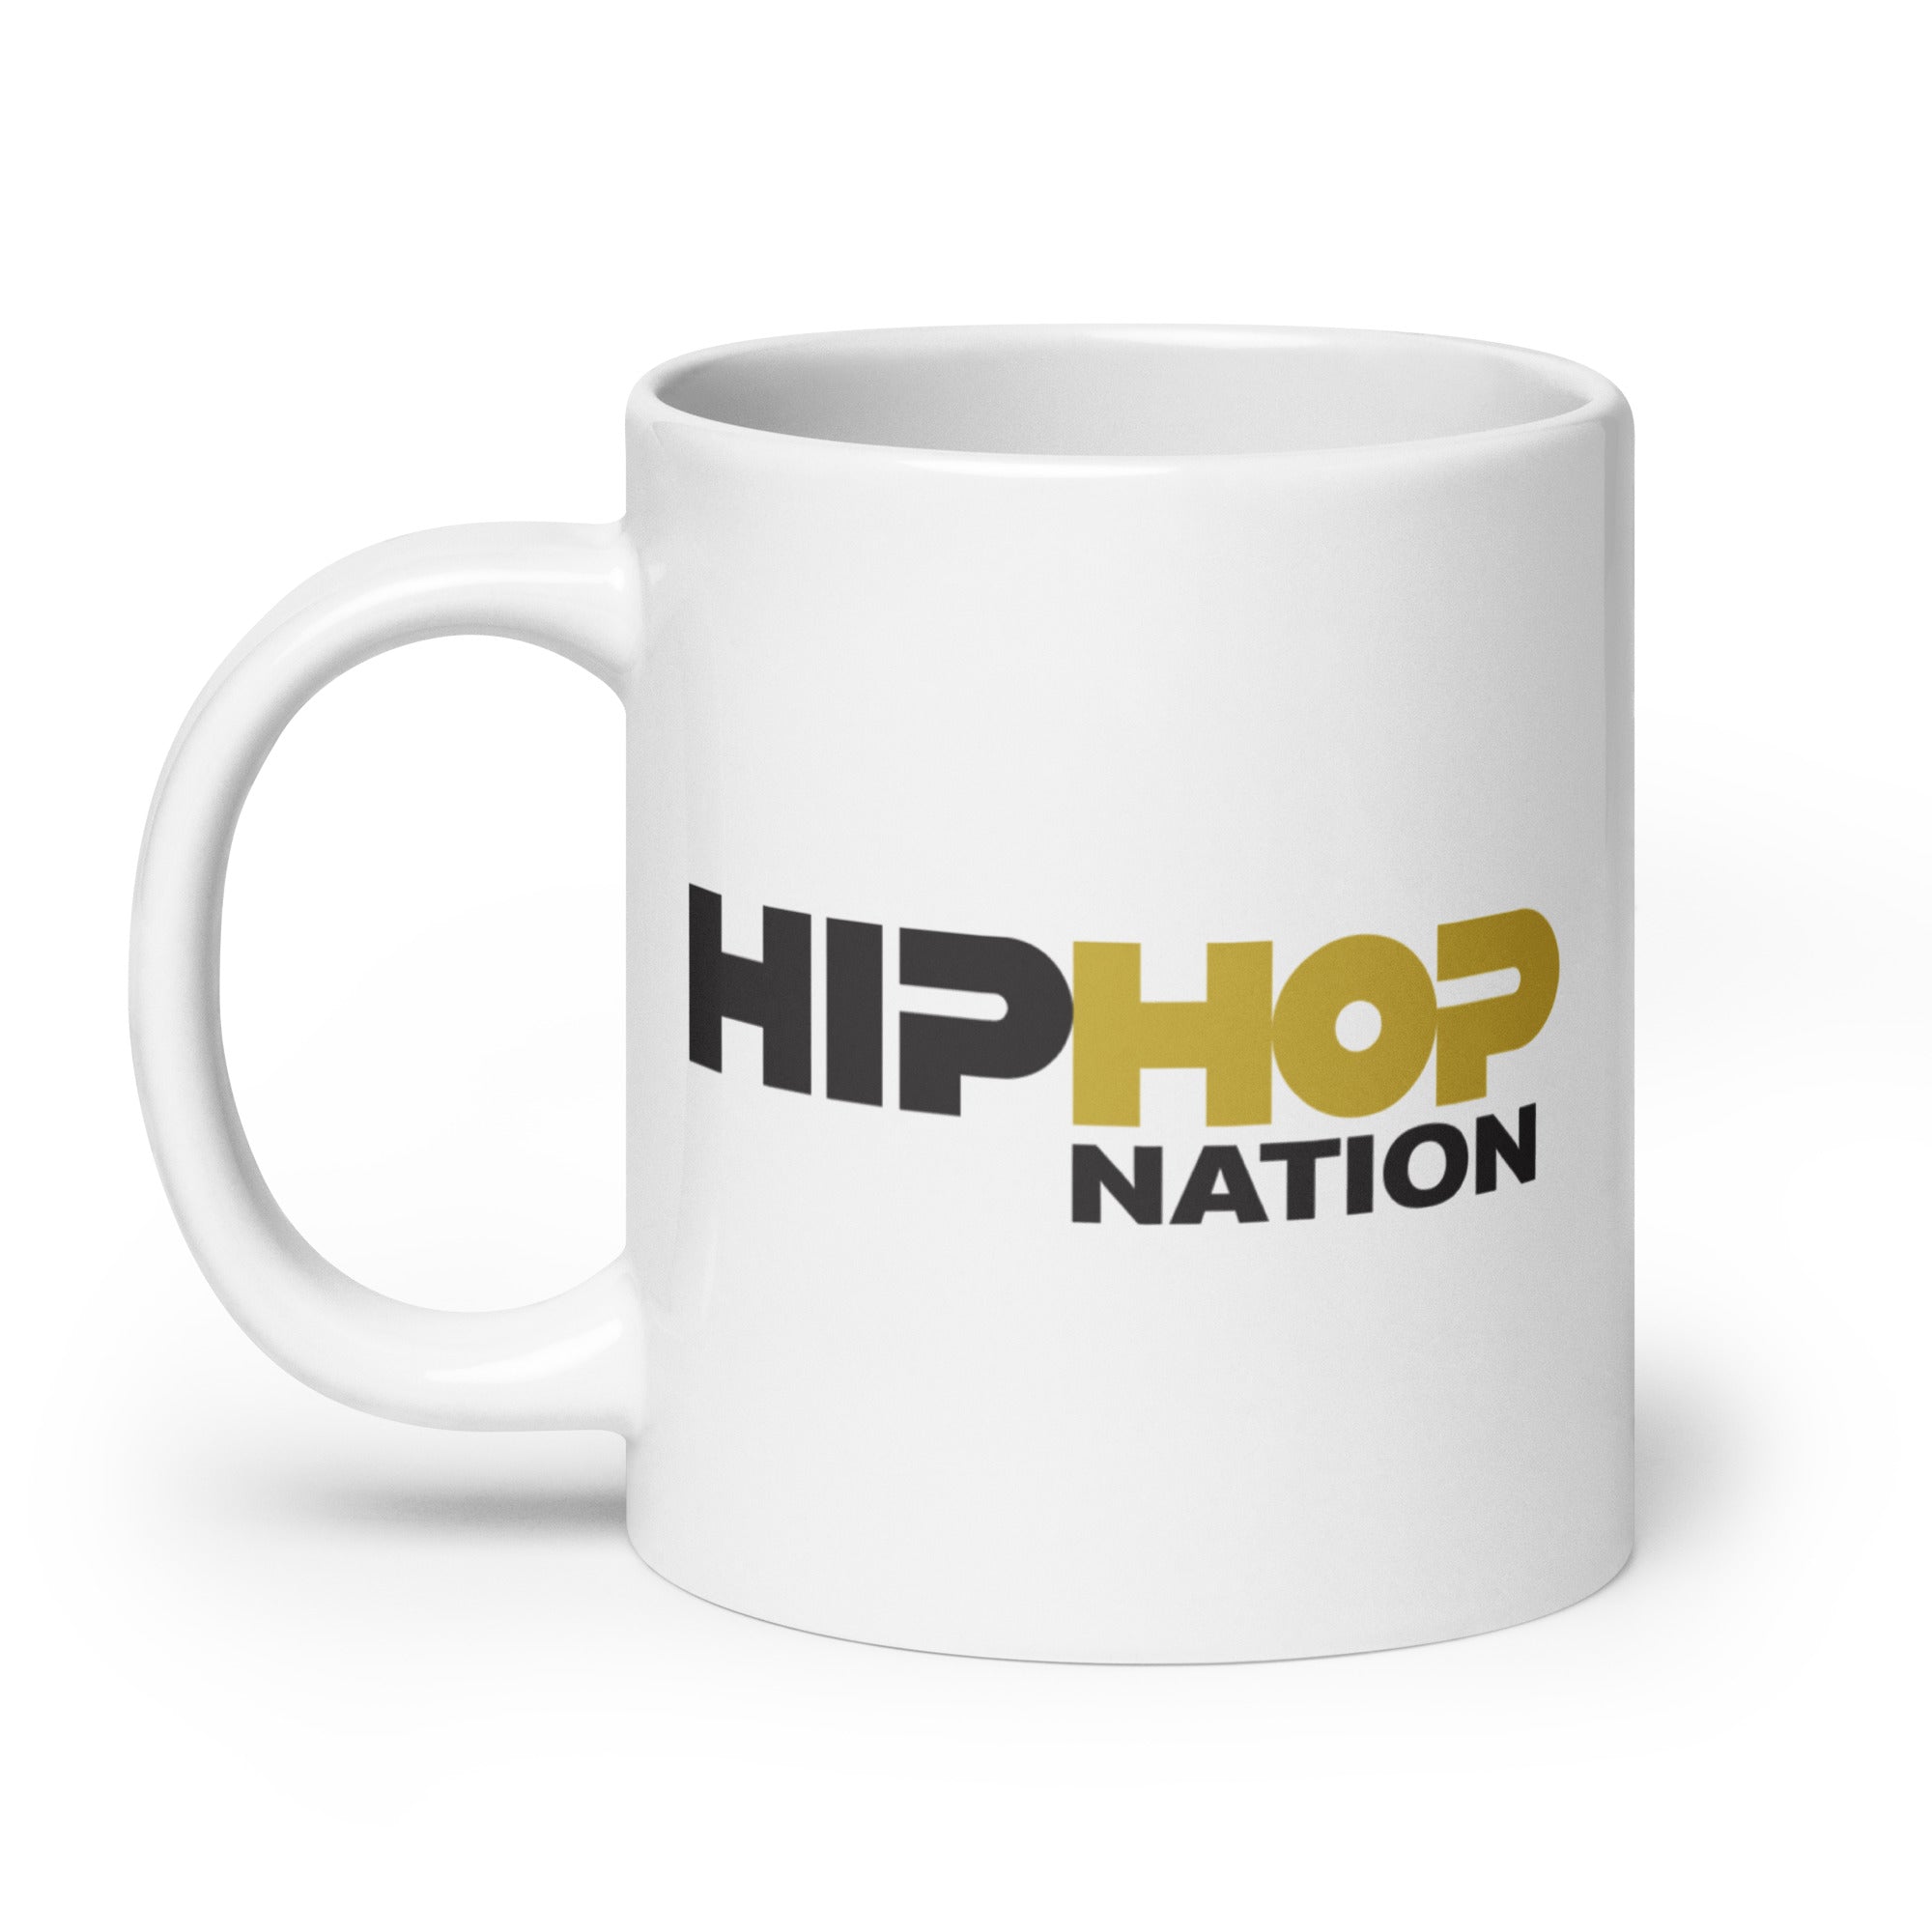 Hip-Hop Nation: Mug